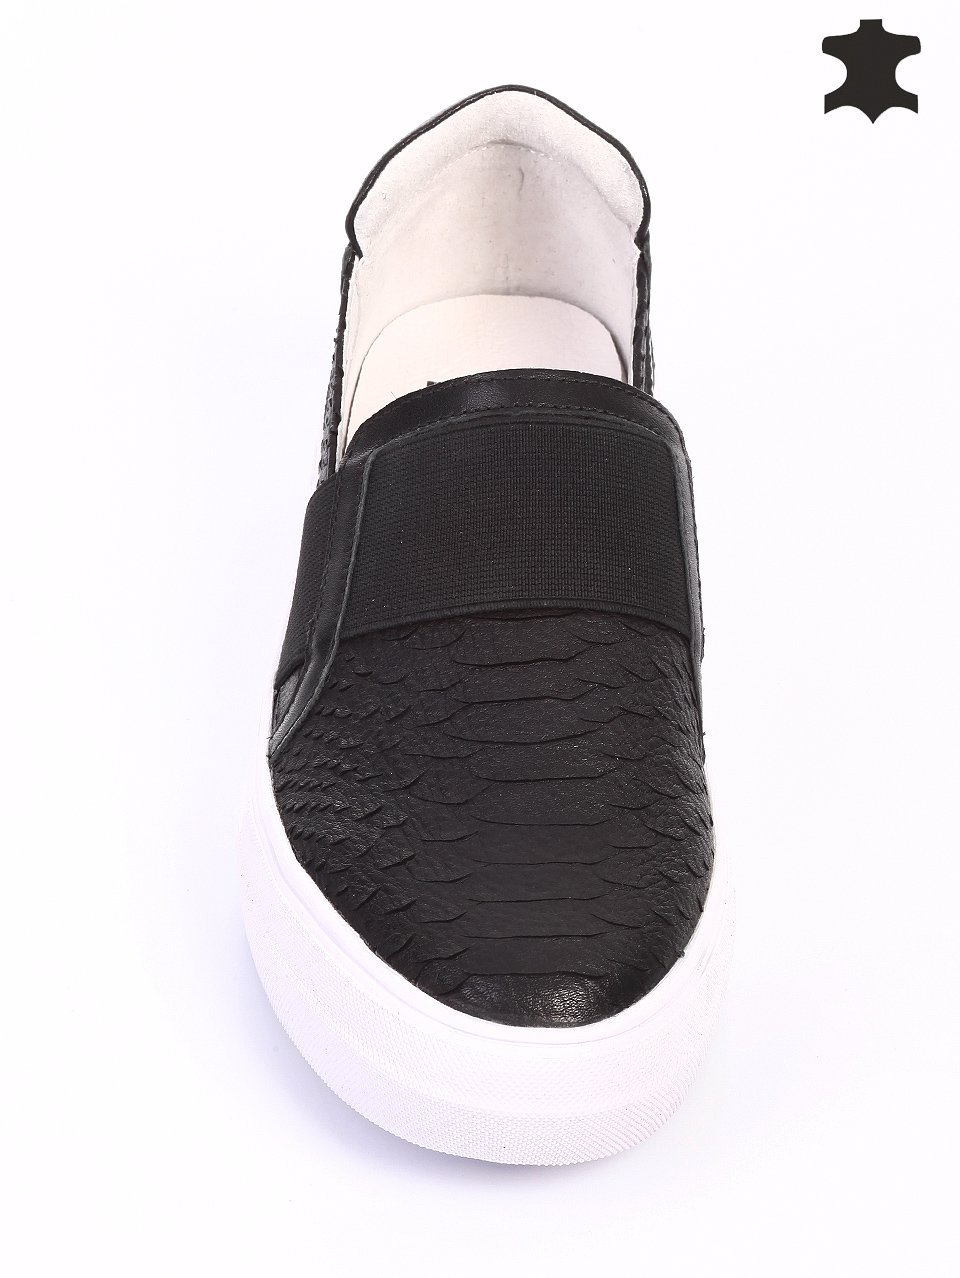 Ежедневни дамски обувки от естествена кожа 3I-16238 black